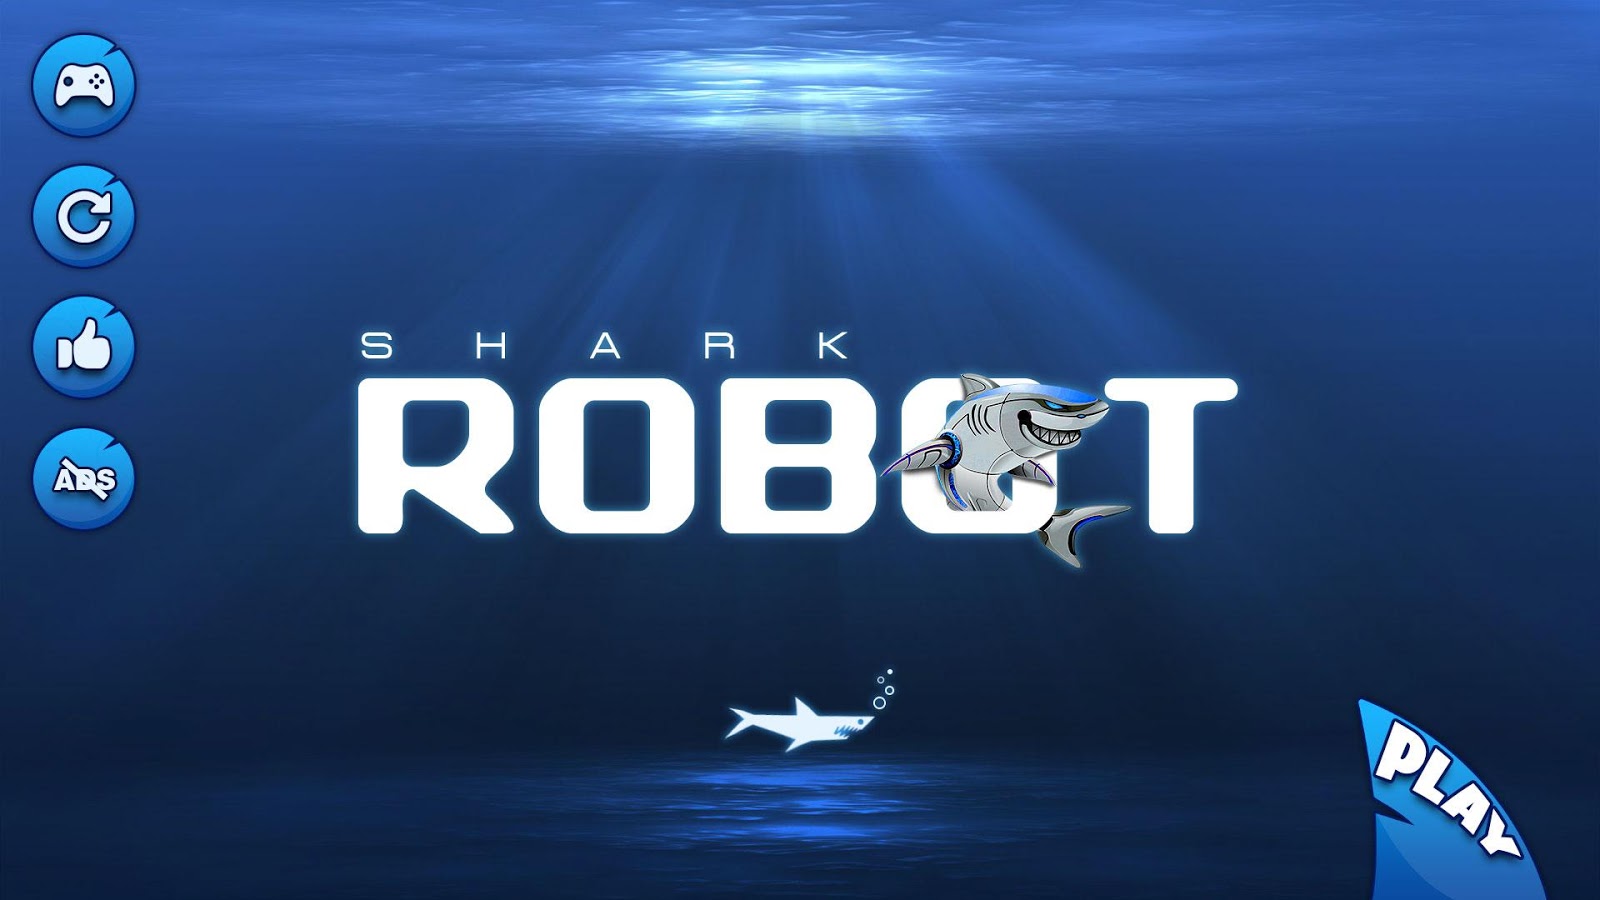 特警 机器人 鲨鱼 演变 战争 - 鲨鱼 罐 游戏截图1